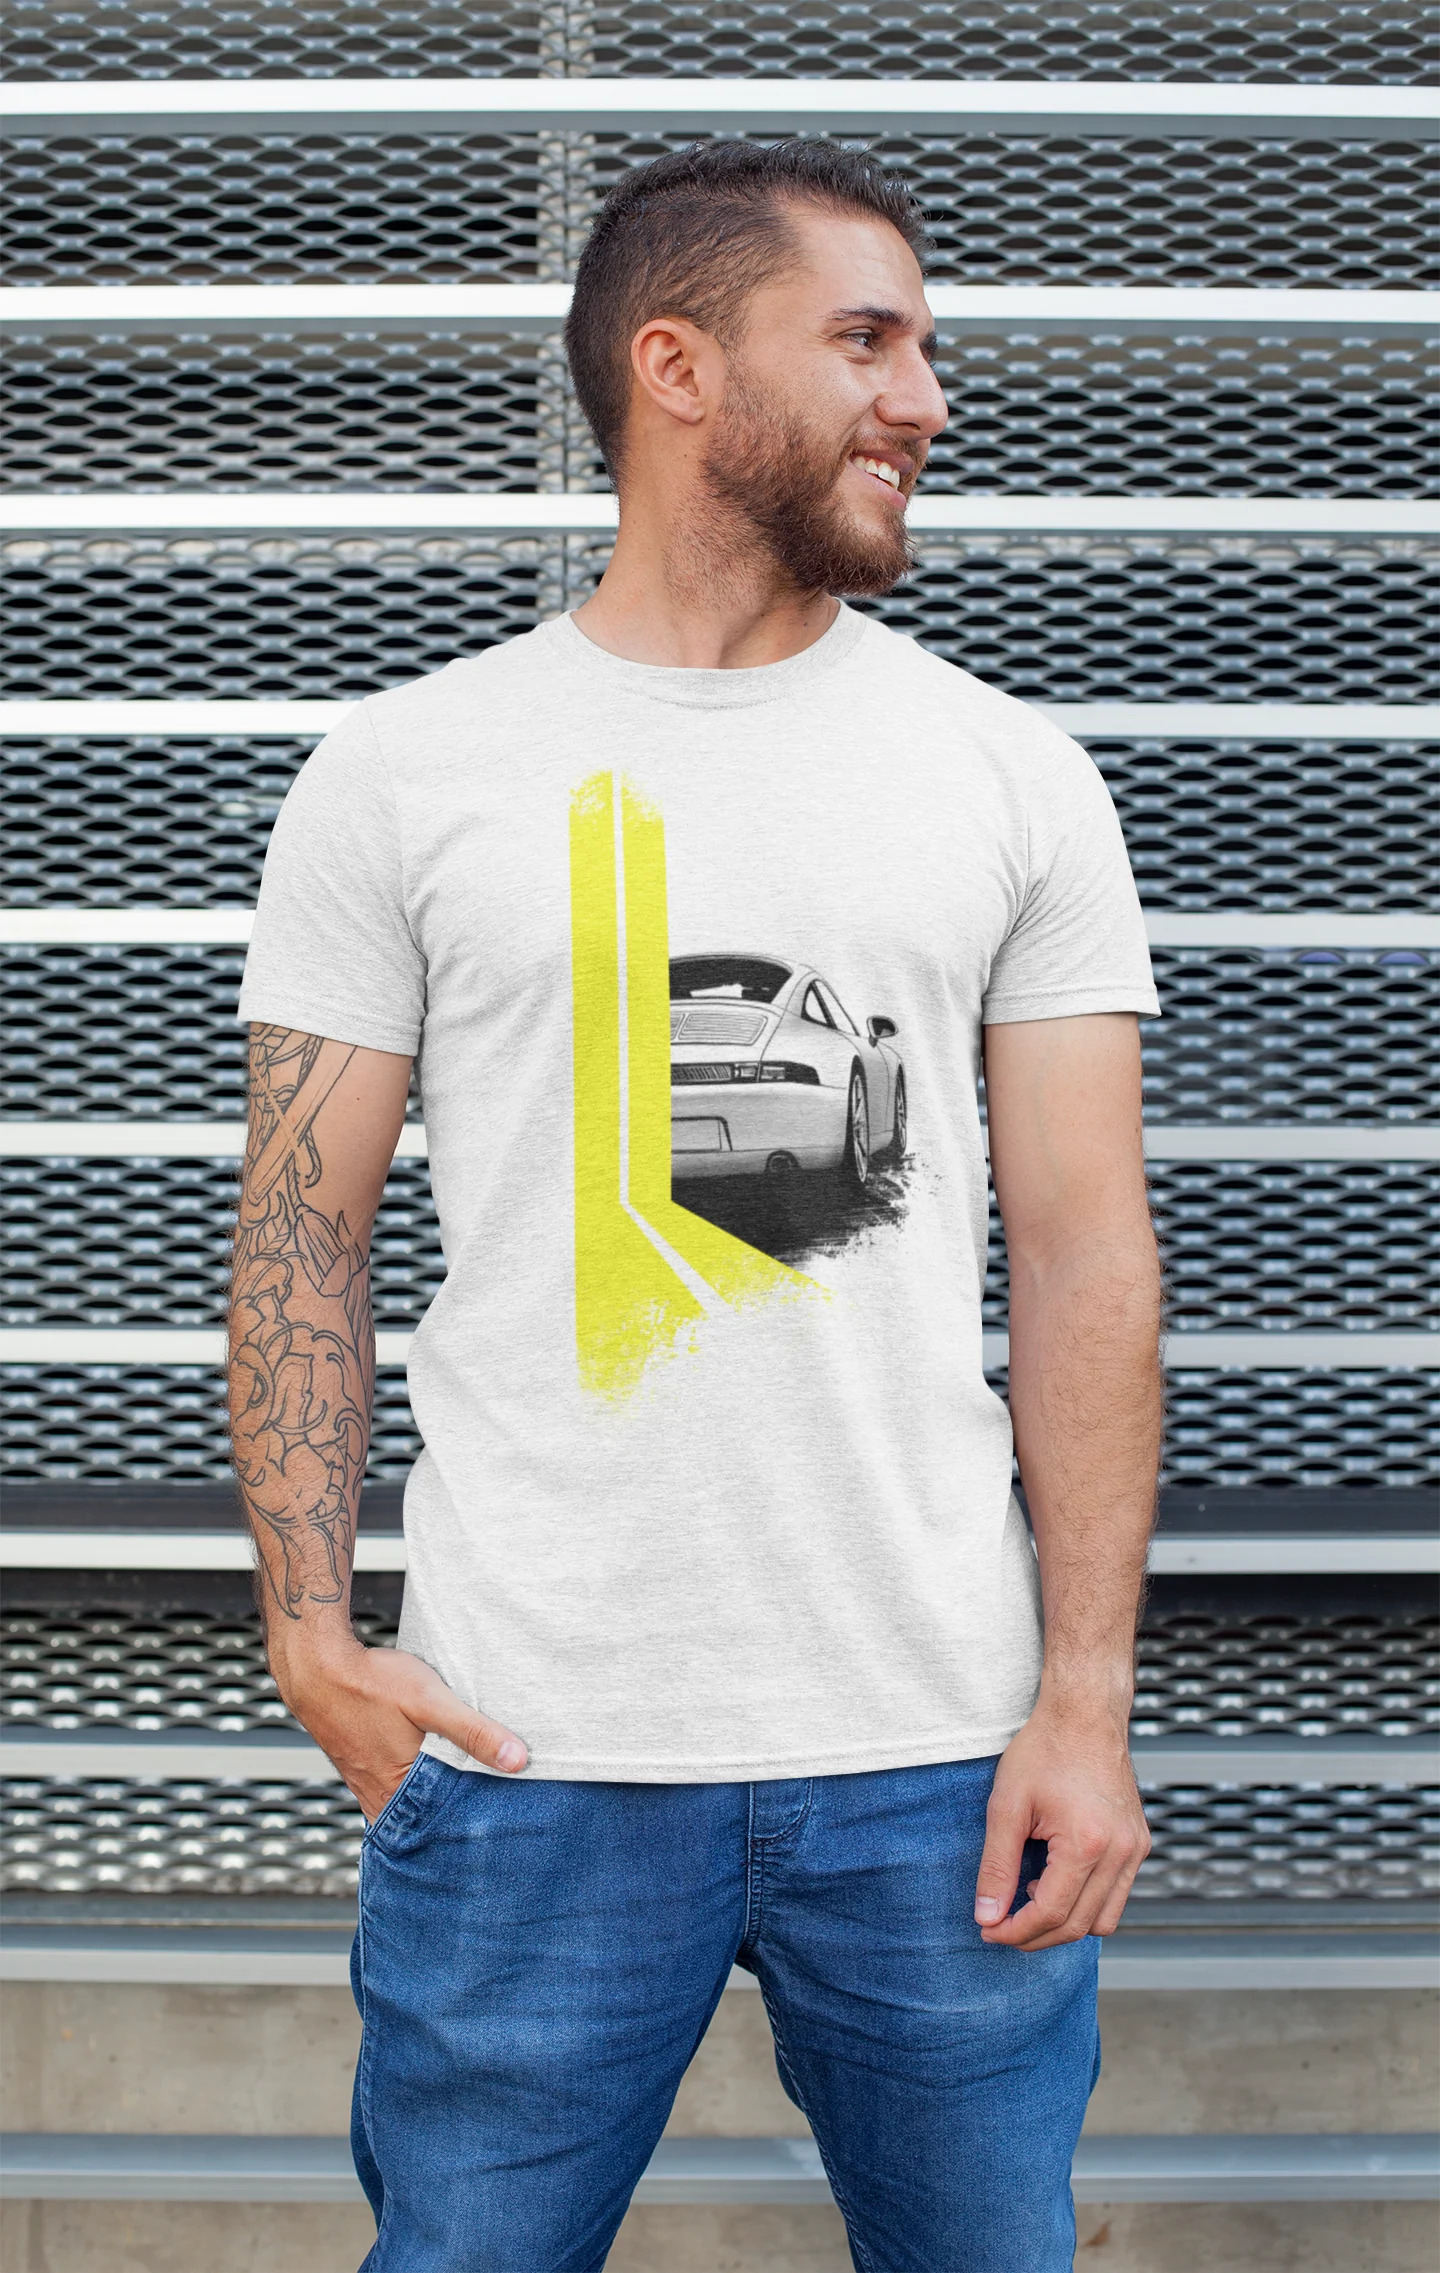 Flat Six / 993 Porsche 911 t-shirt in yellow